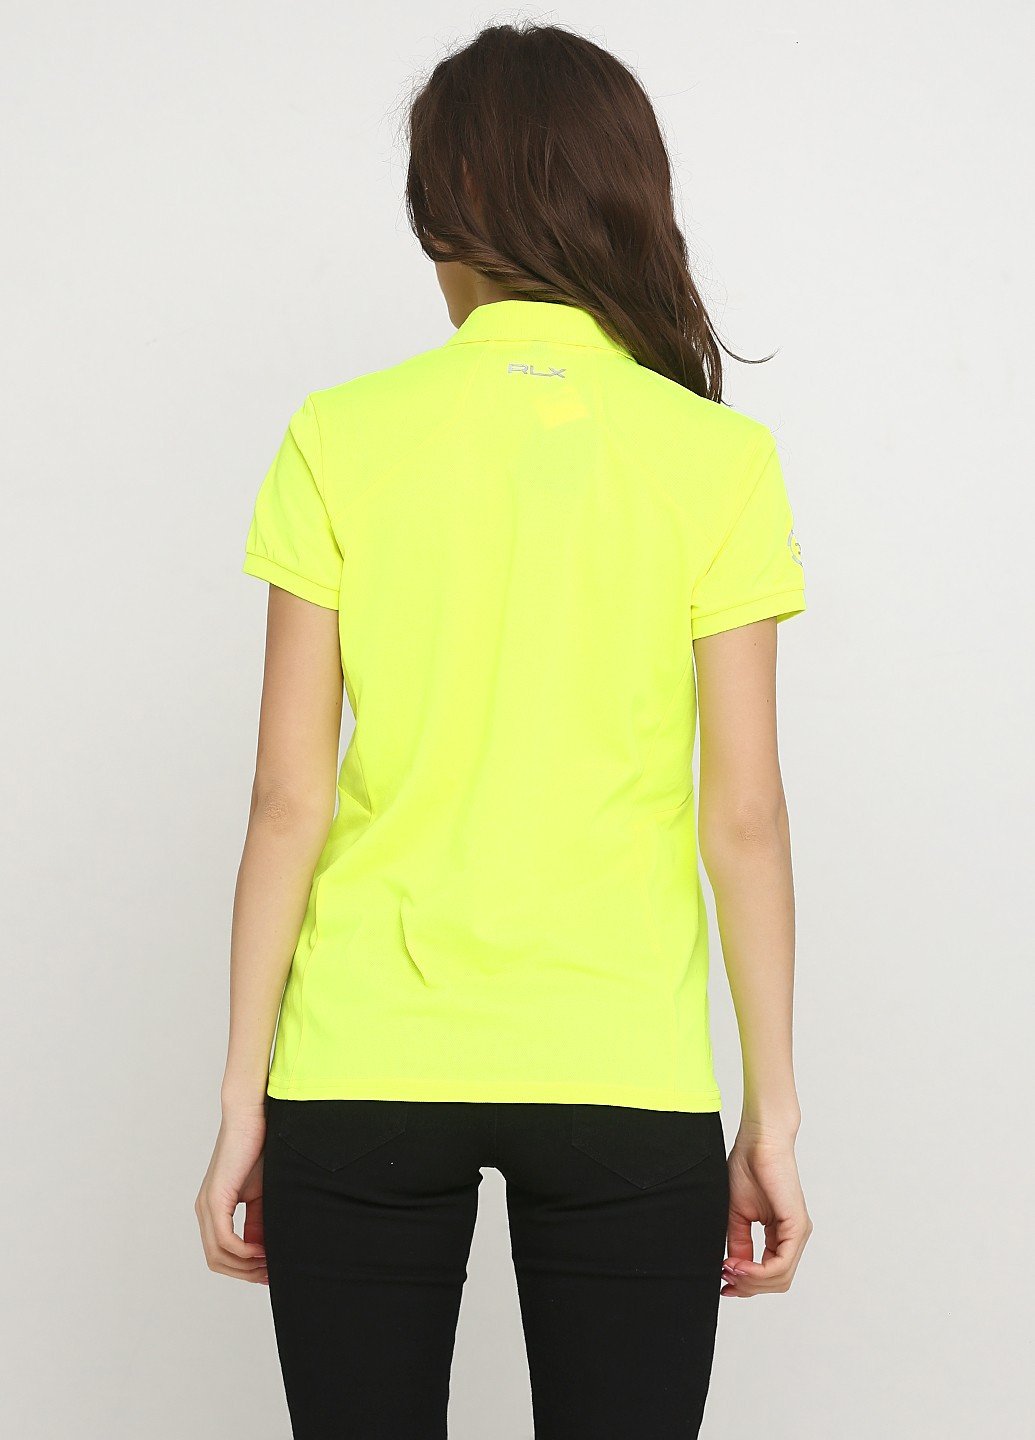 Жовта літня футболка Ralph Lauren